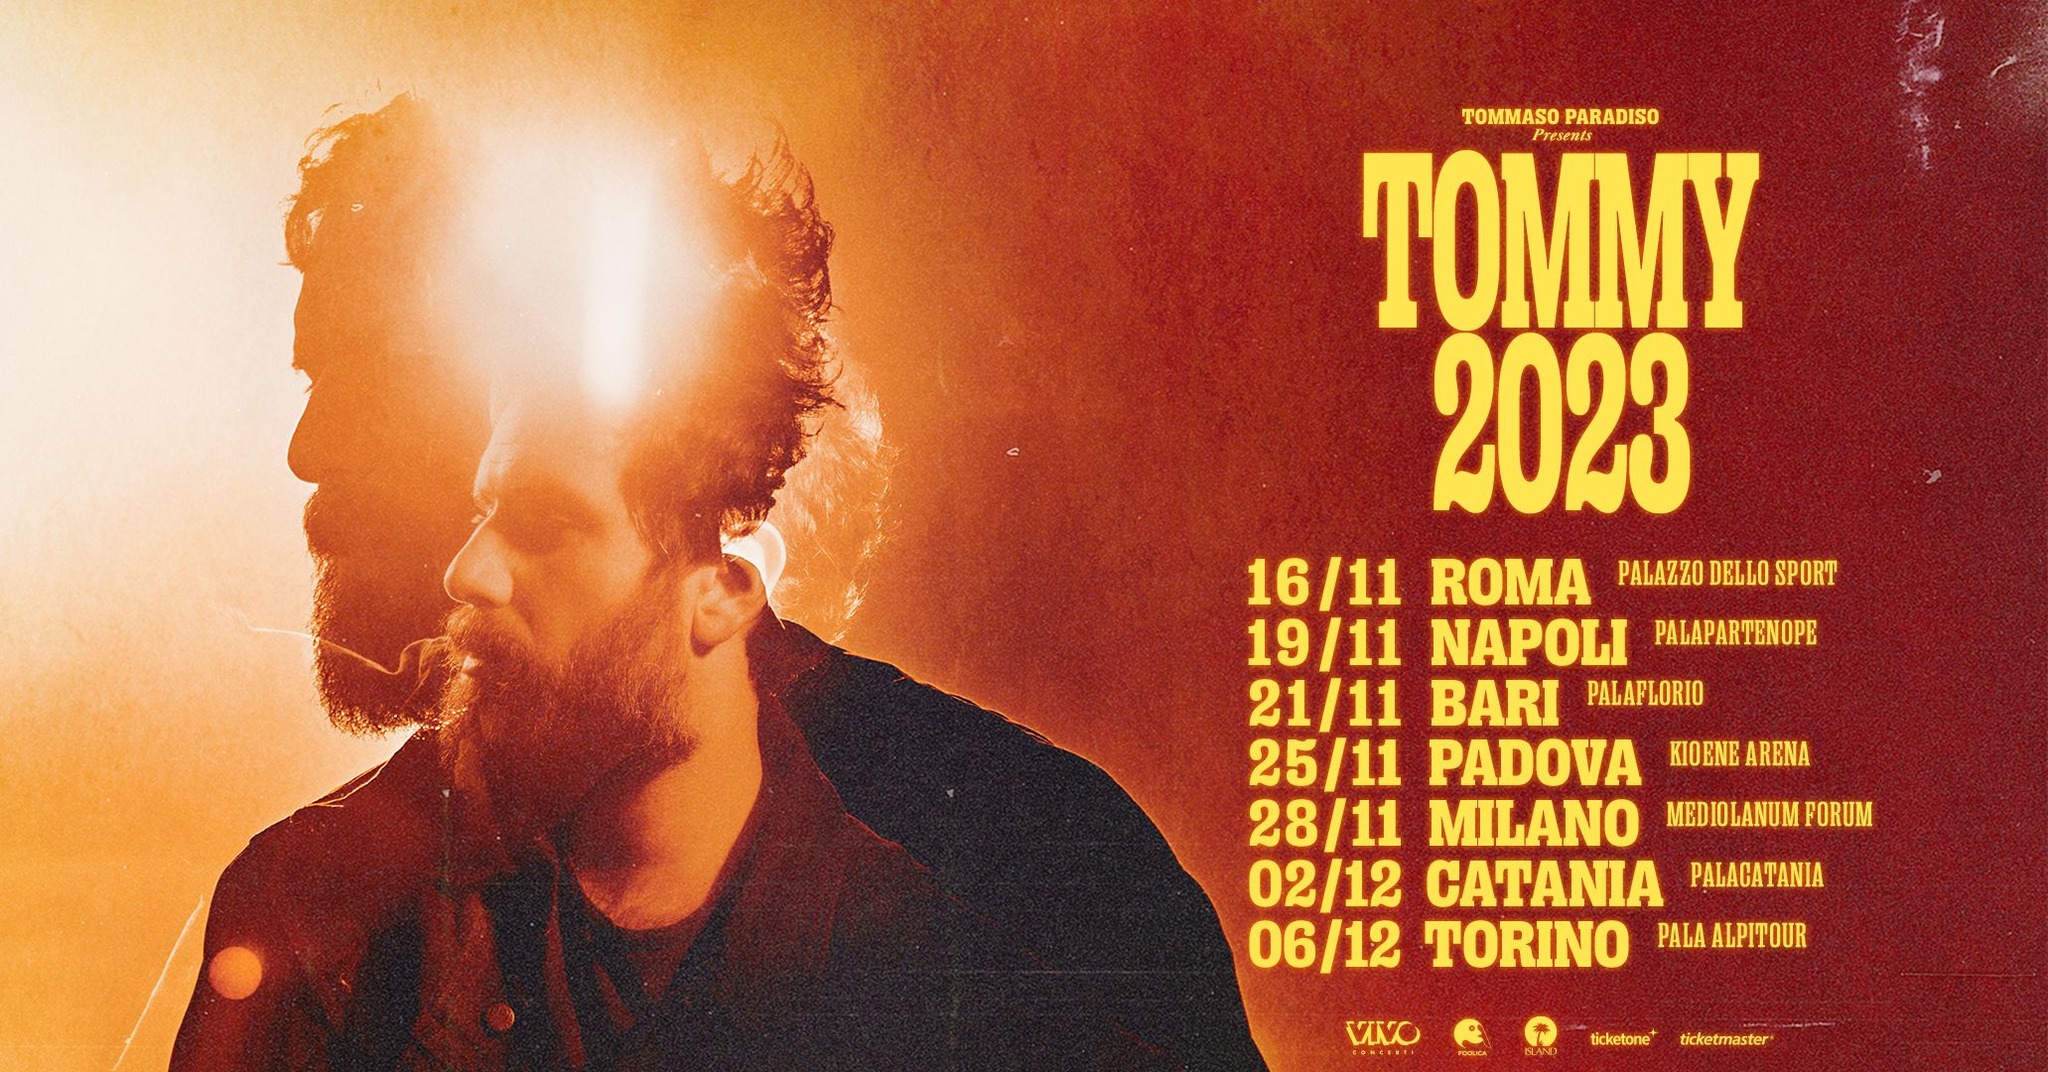 Tommaso Paradiso – Tommy 2023